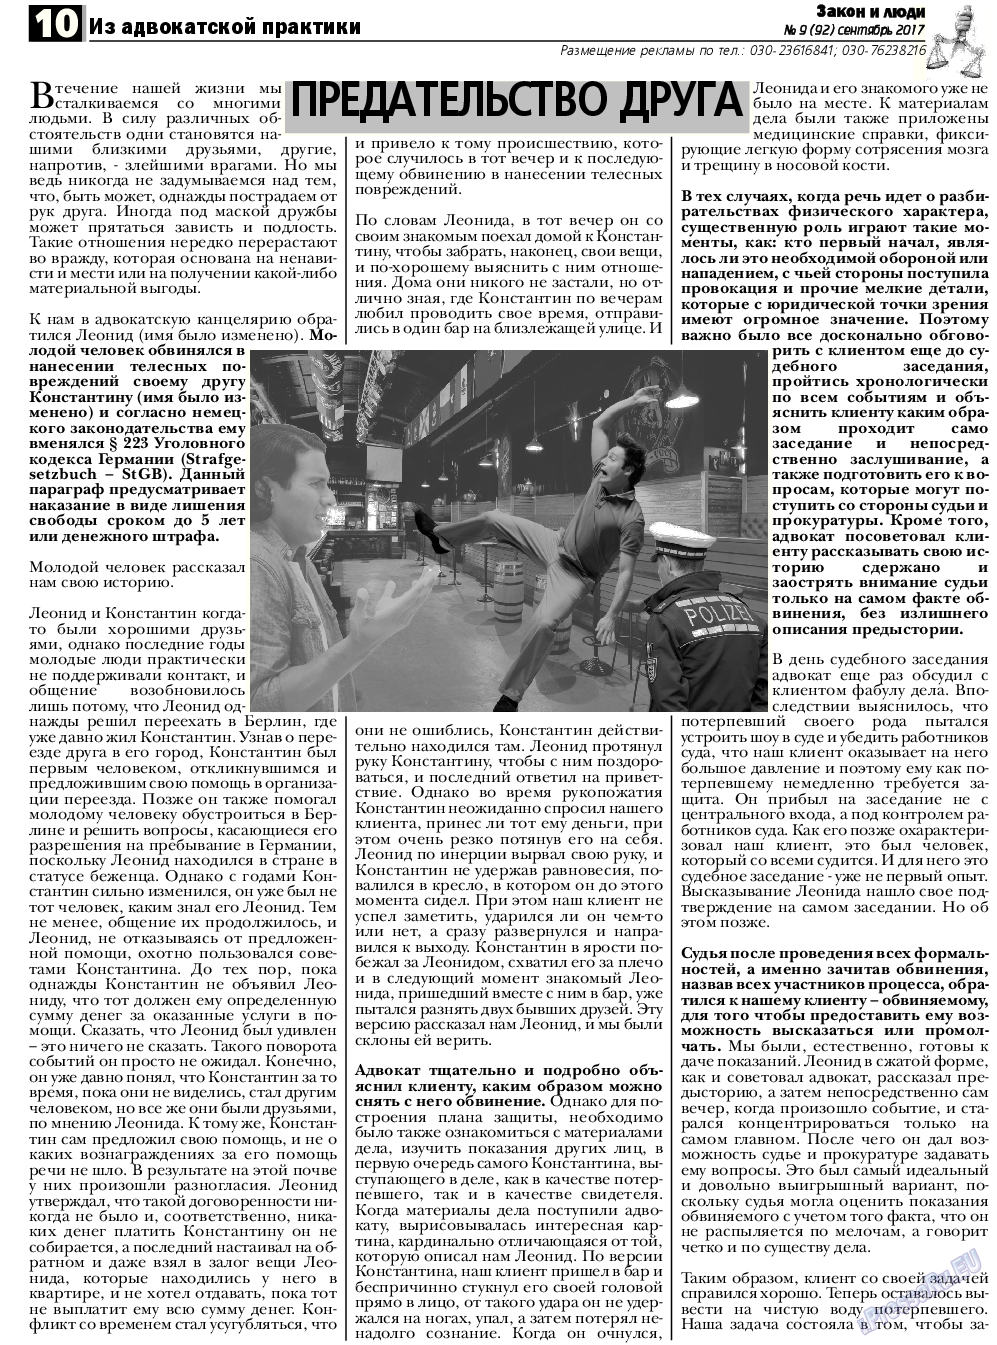 Закон и люди, газета. 2017 №9 стр.10